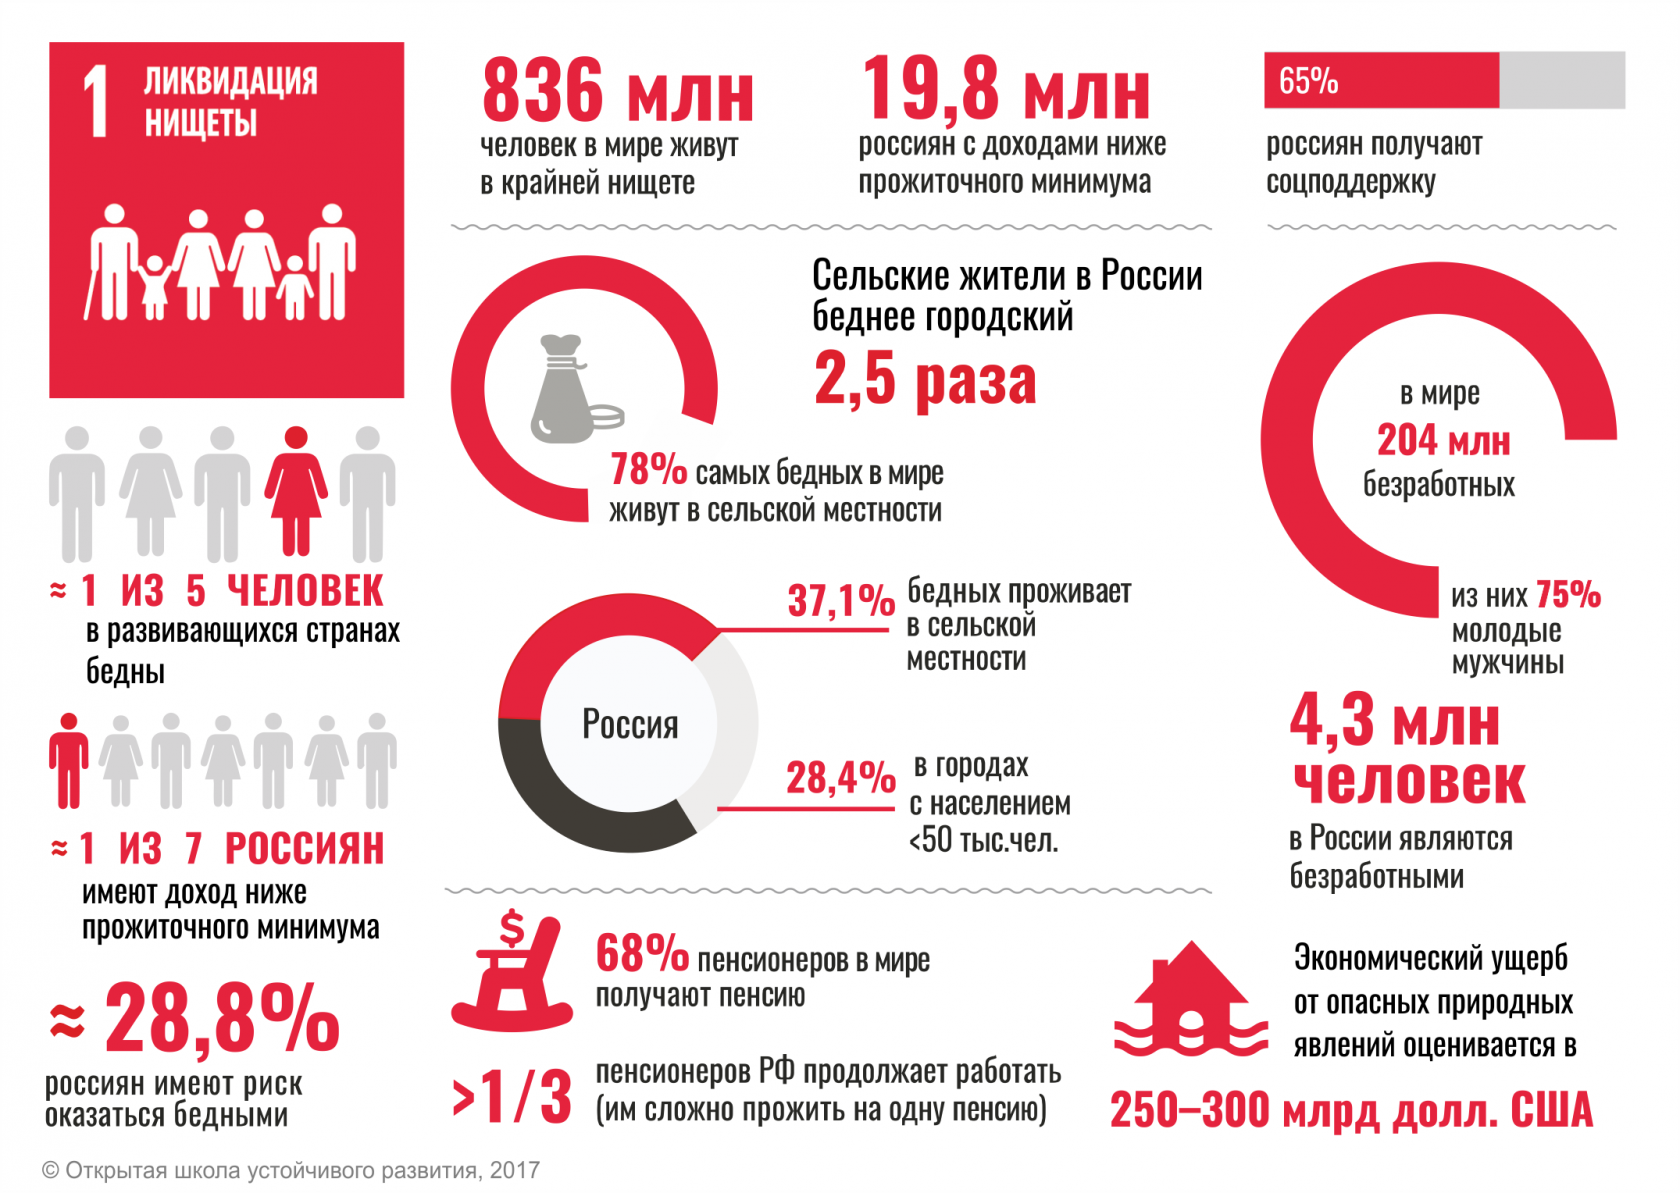 Ликвидация нищеты в России. Статистика бедности в мире. ЦУР цель 1: ликвидация нищеты. Структура бедности в России.